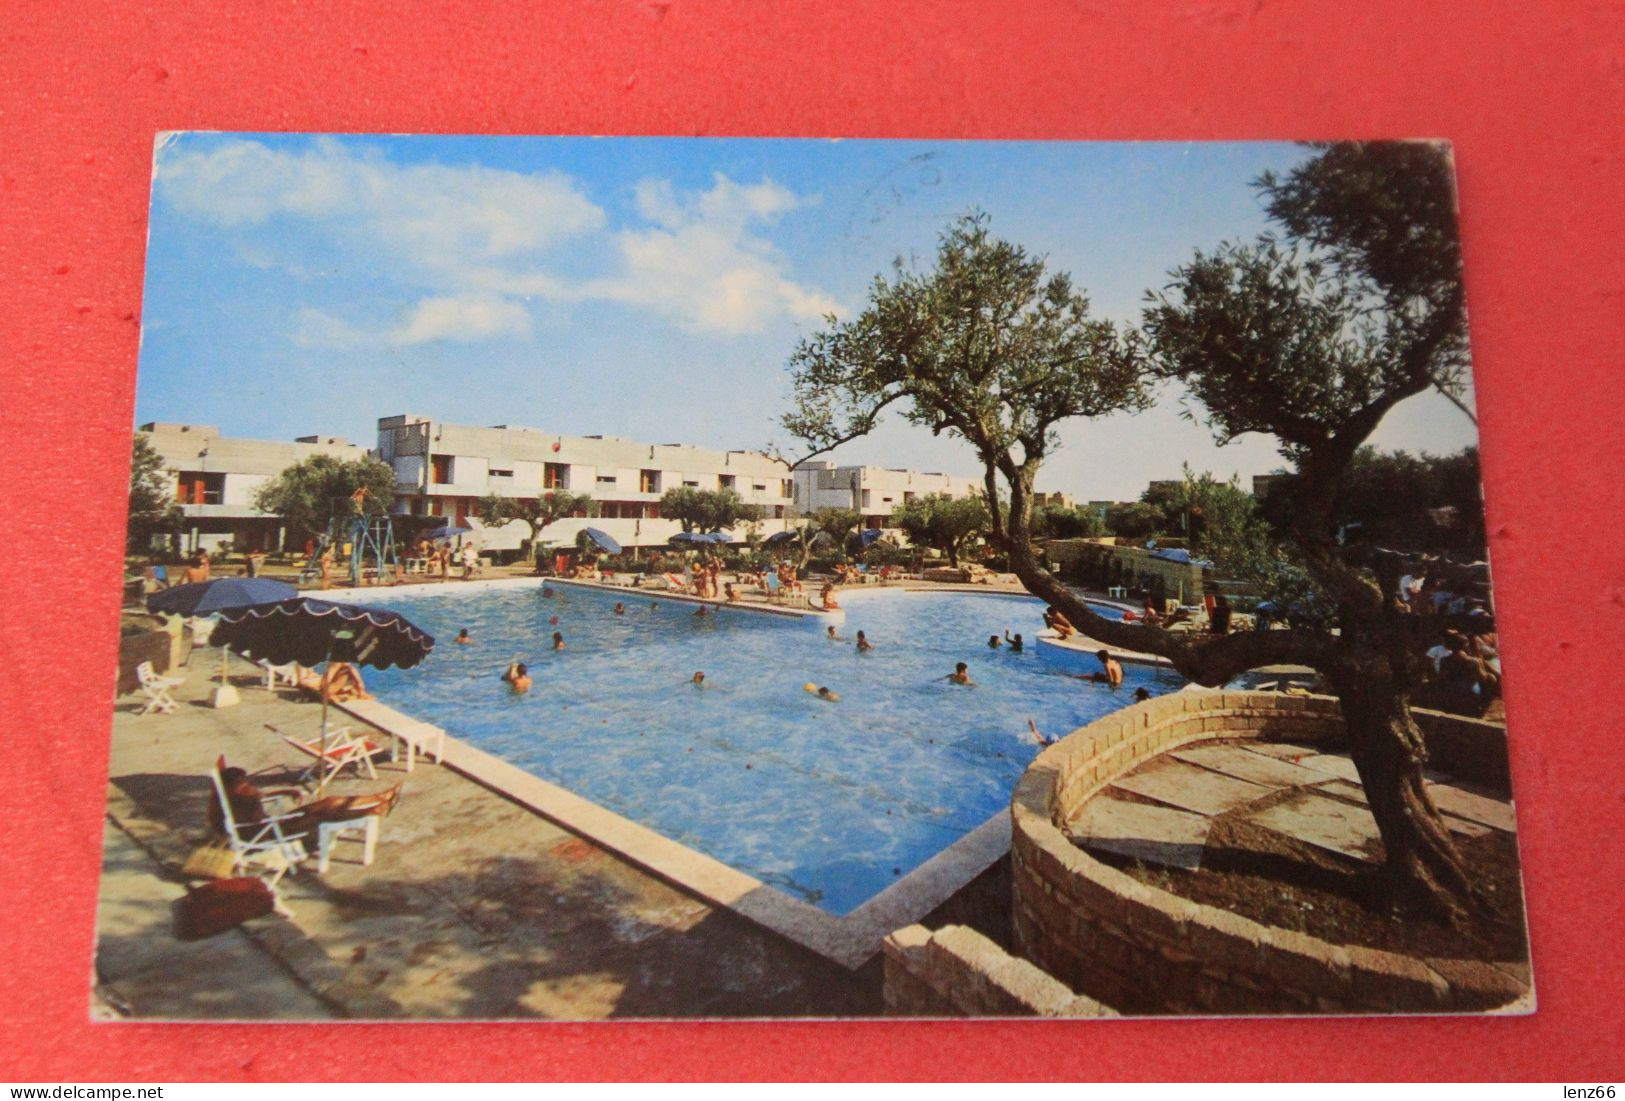 Crotone Isola Capo Rizzuto Hotel Valtur 1974 - Crotone